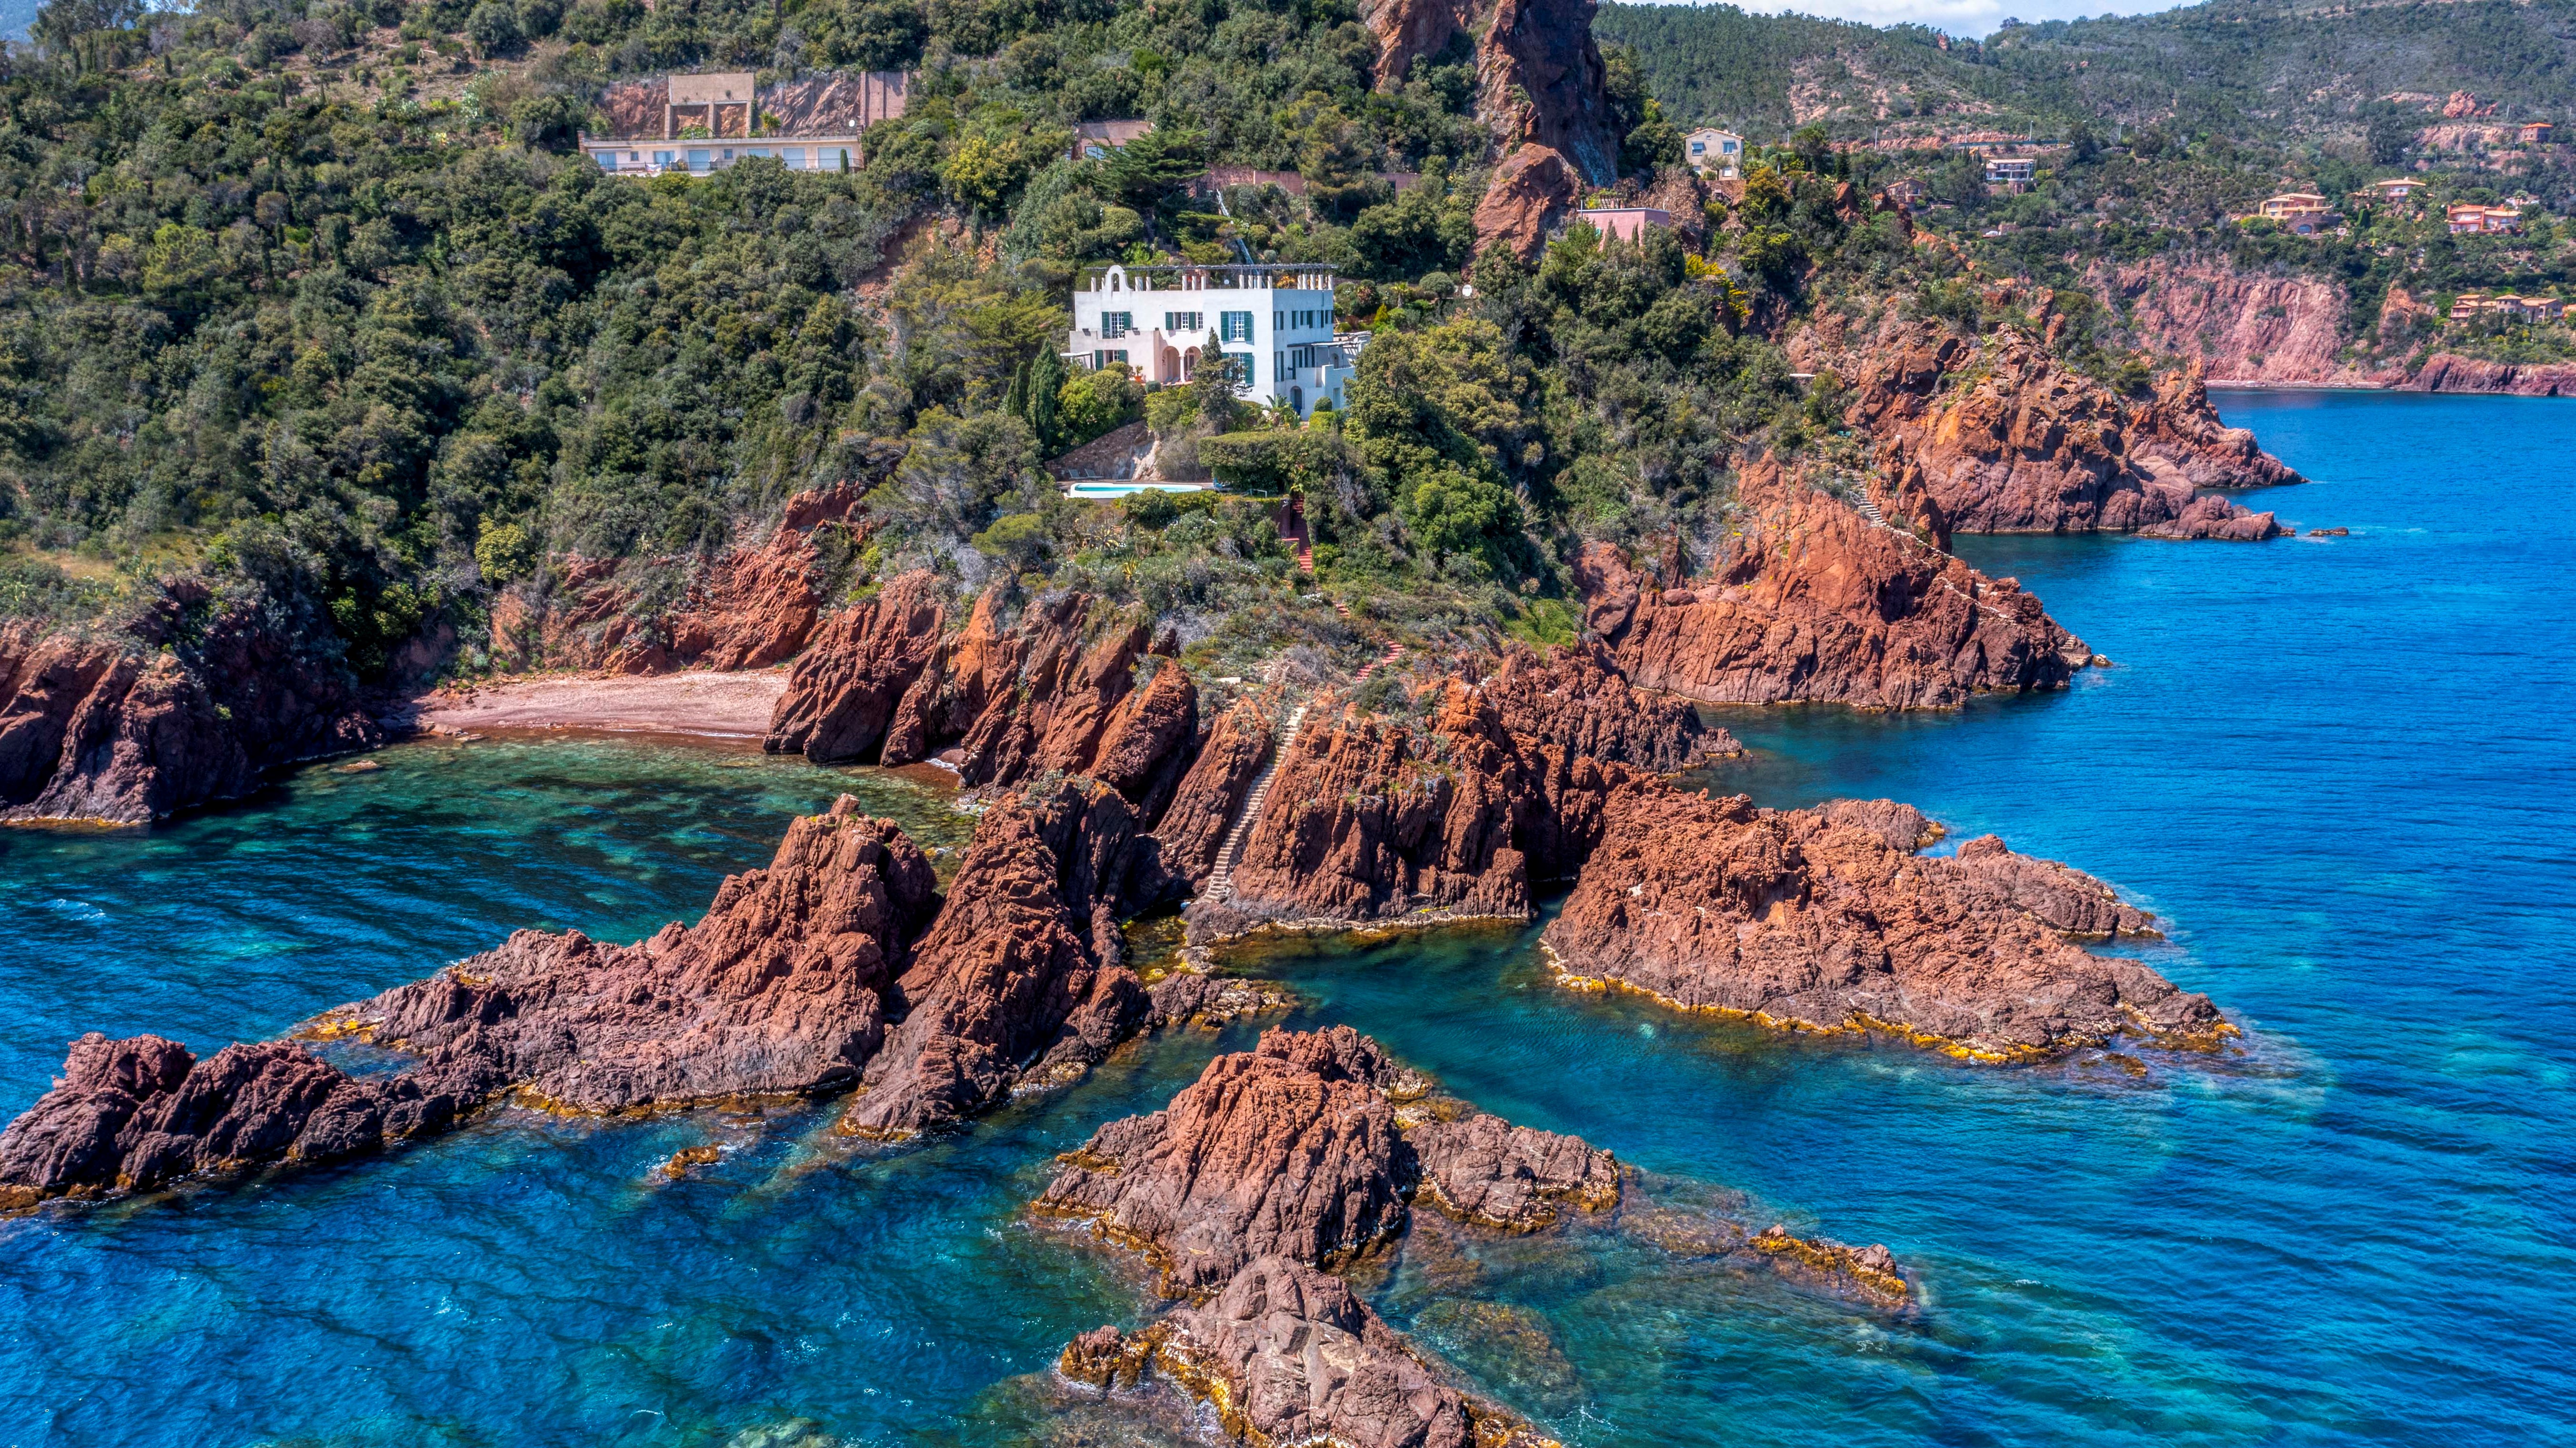 Immobilier de prestige. L'Agence Europa vous présente une villa d'exception pieds dans l'eau à vendre à Théoule-sur-mer - Côte d'Azur